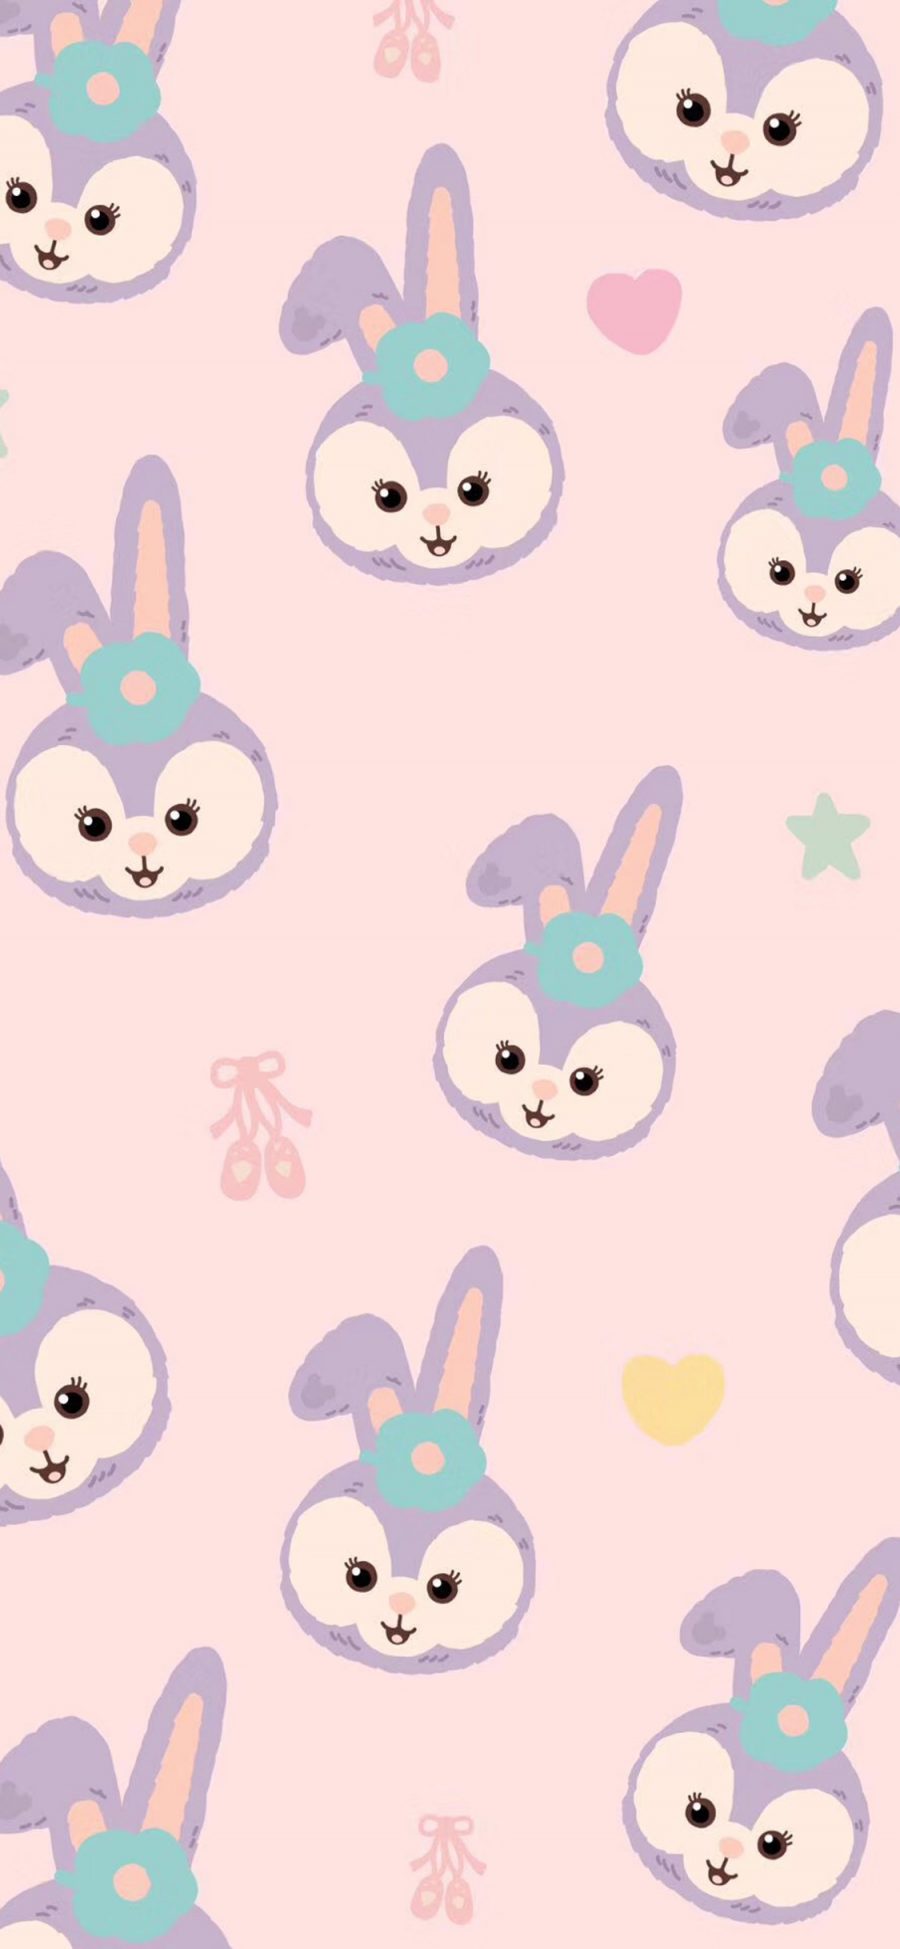 [2436×1125]迪士尼  星黛露 兔子 平铺 苹果手机动漫壁纸图片